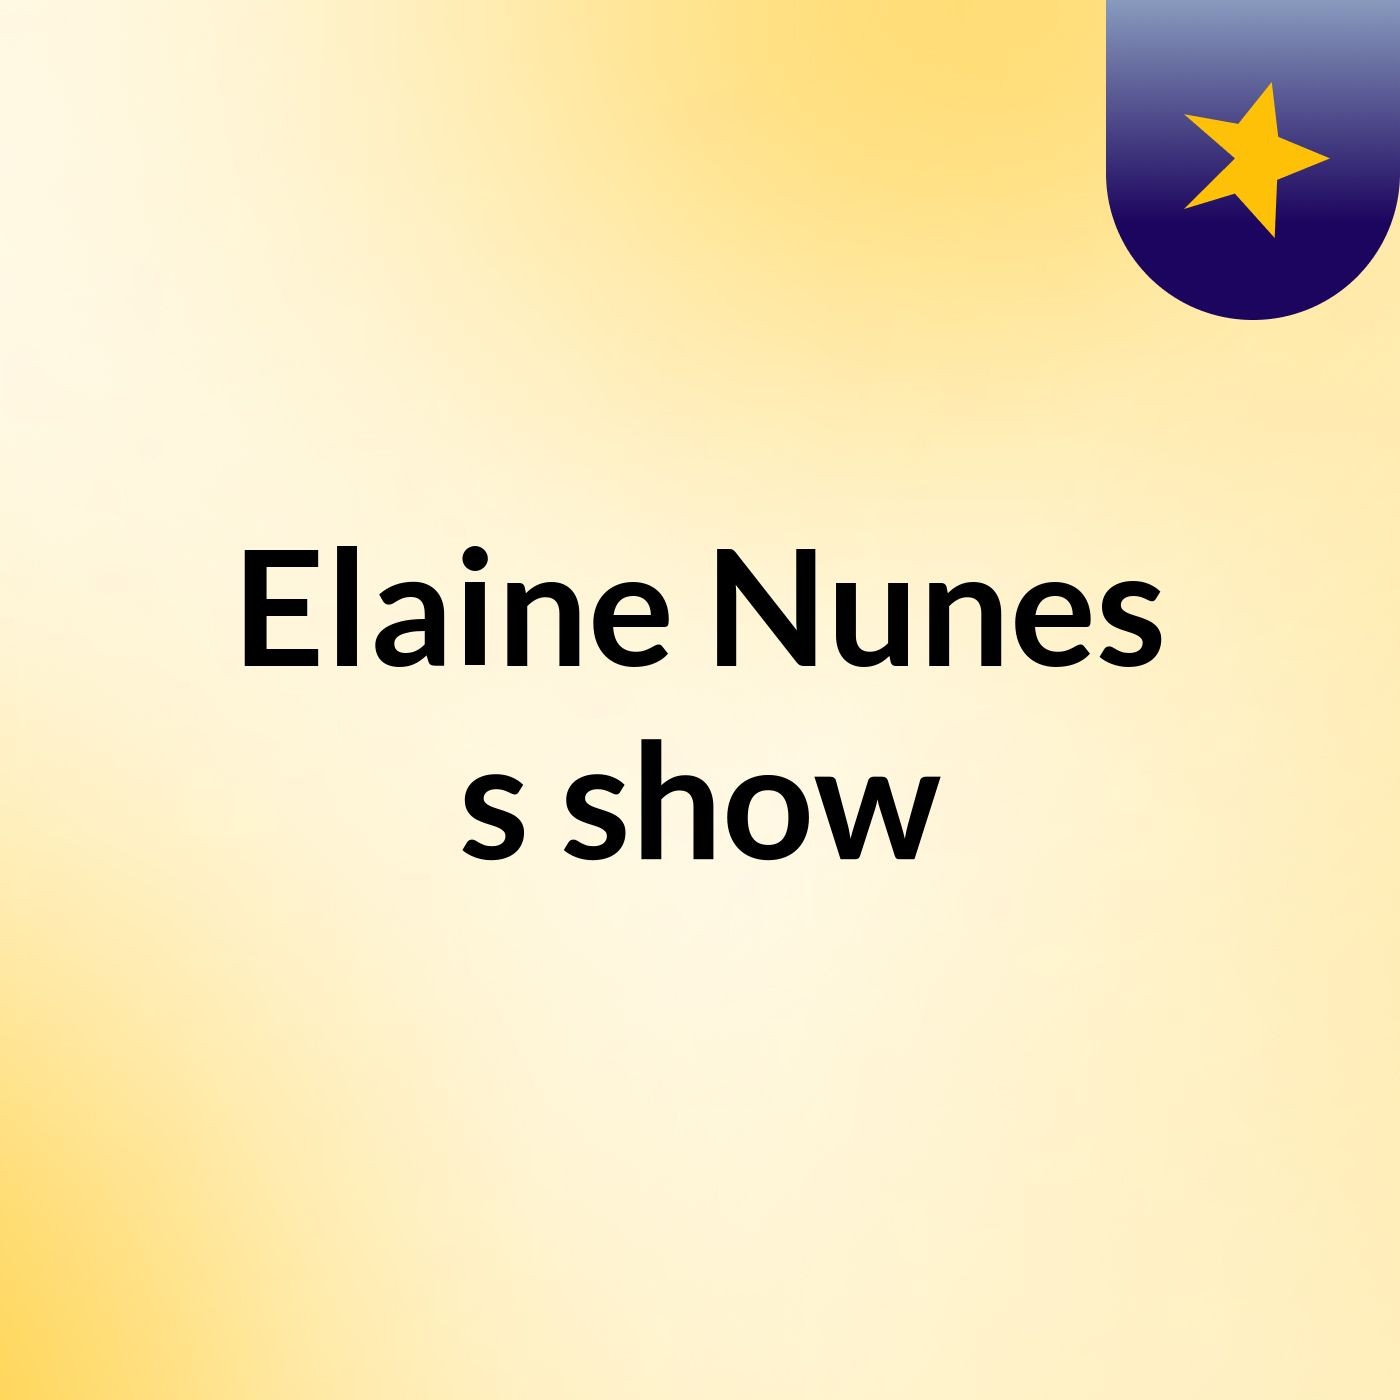 Elaine Nunes's show